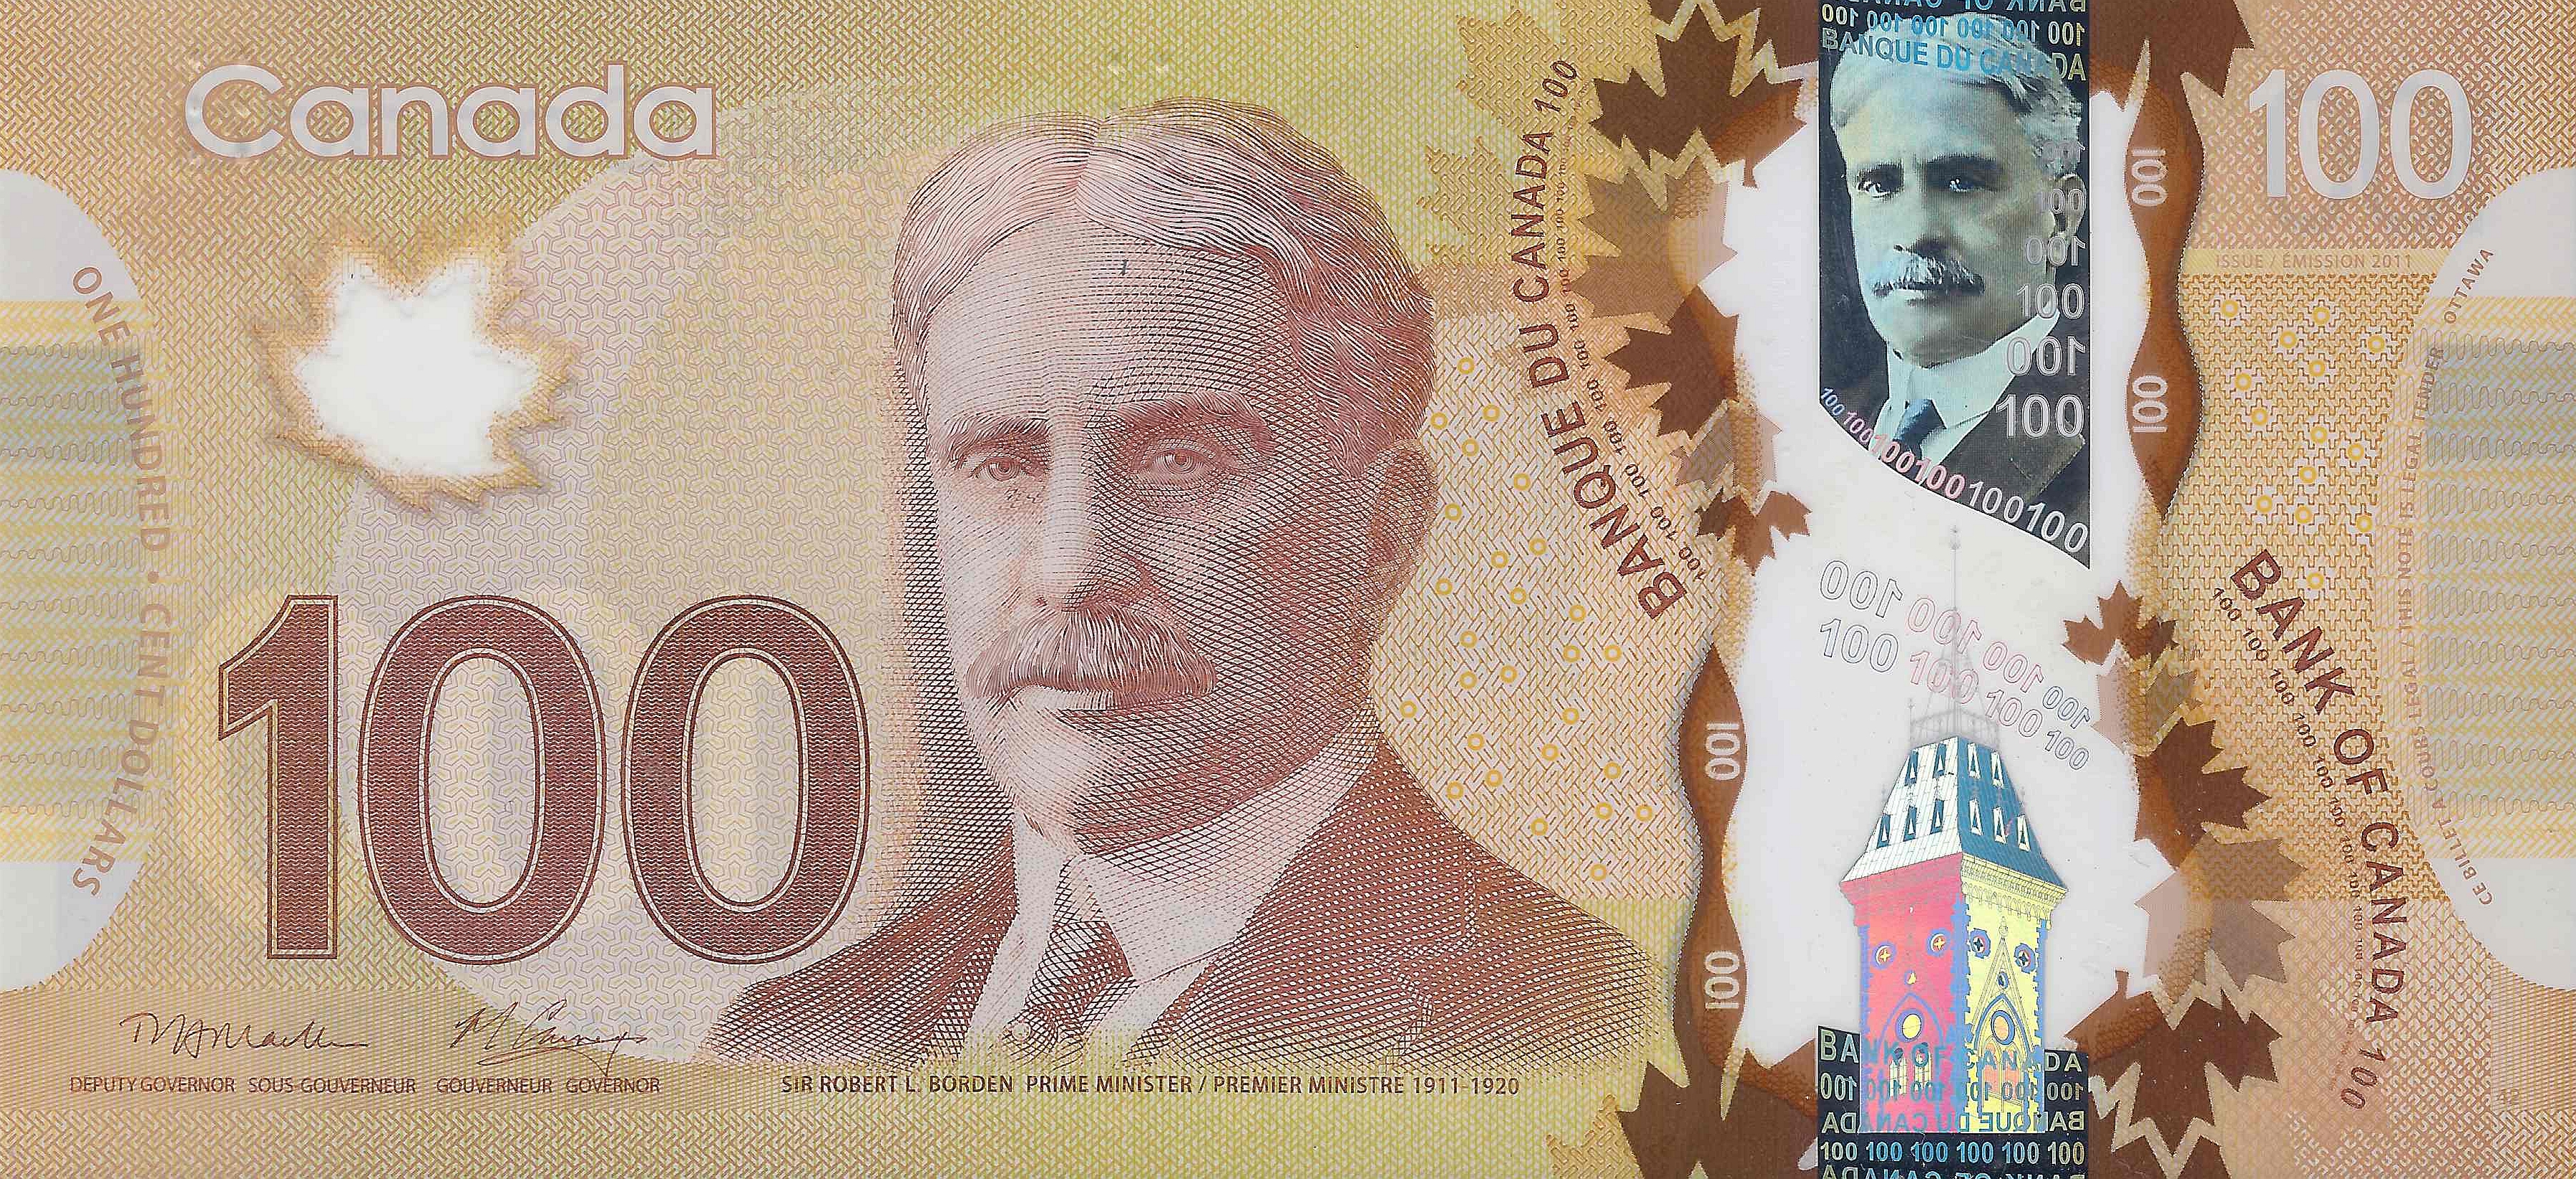 Скачать обои Канадский Доллар на телефон бесплатно